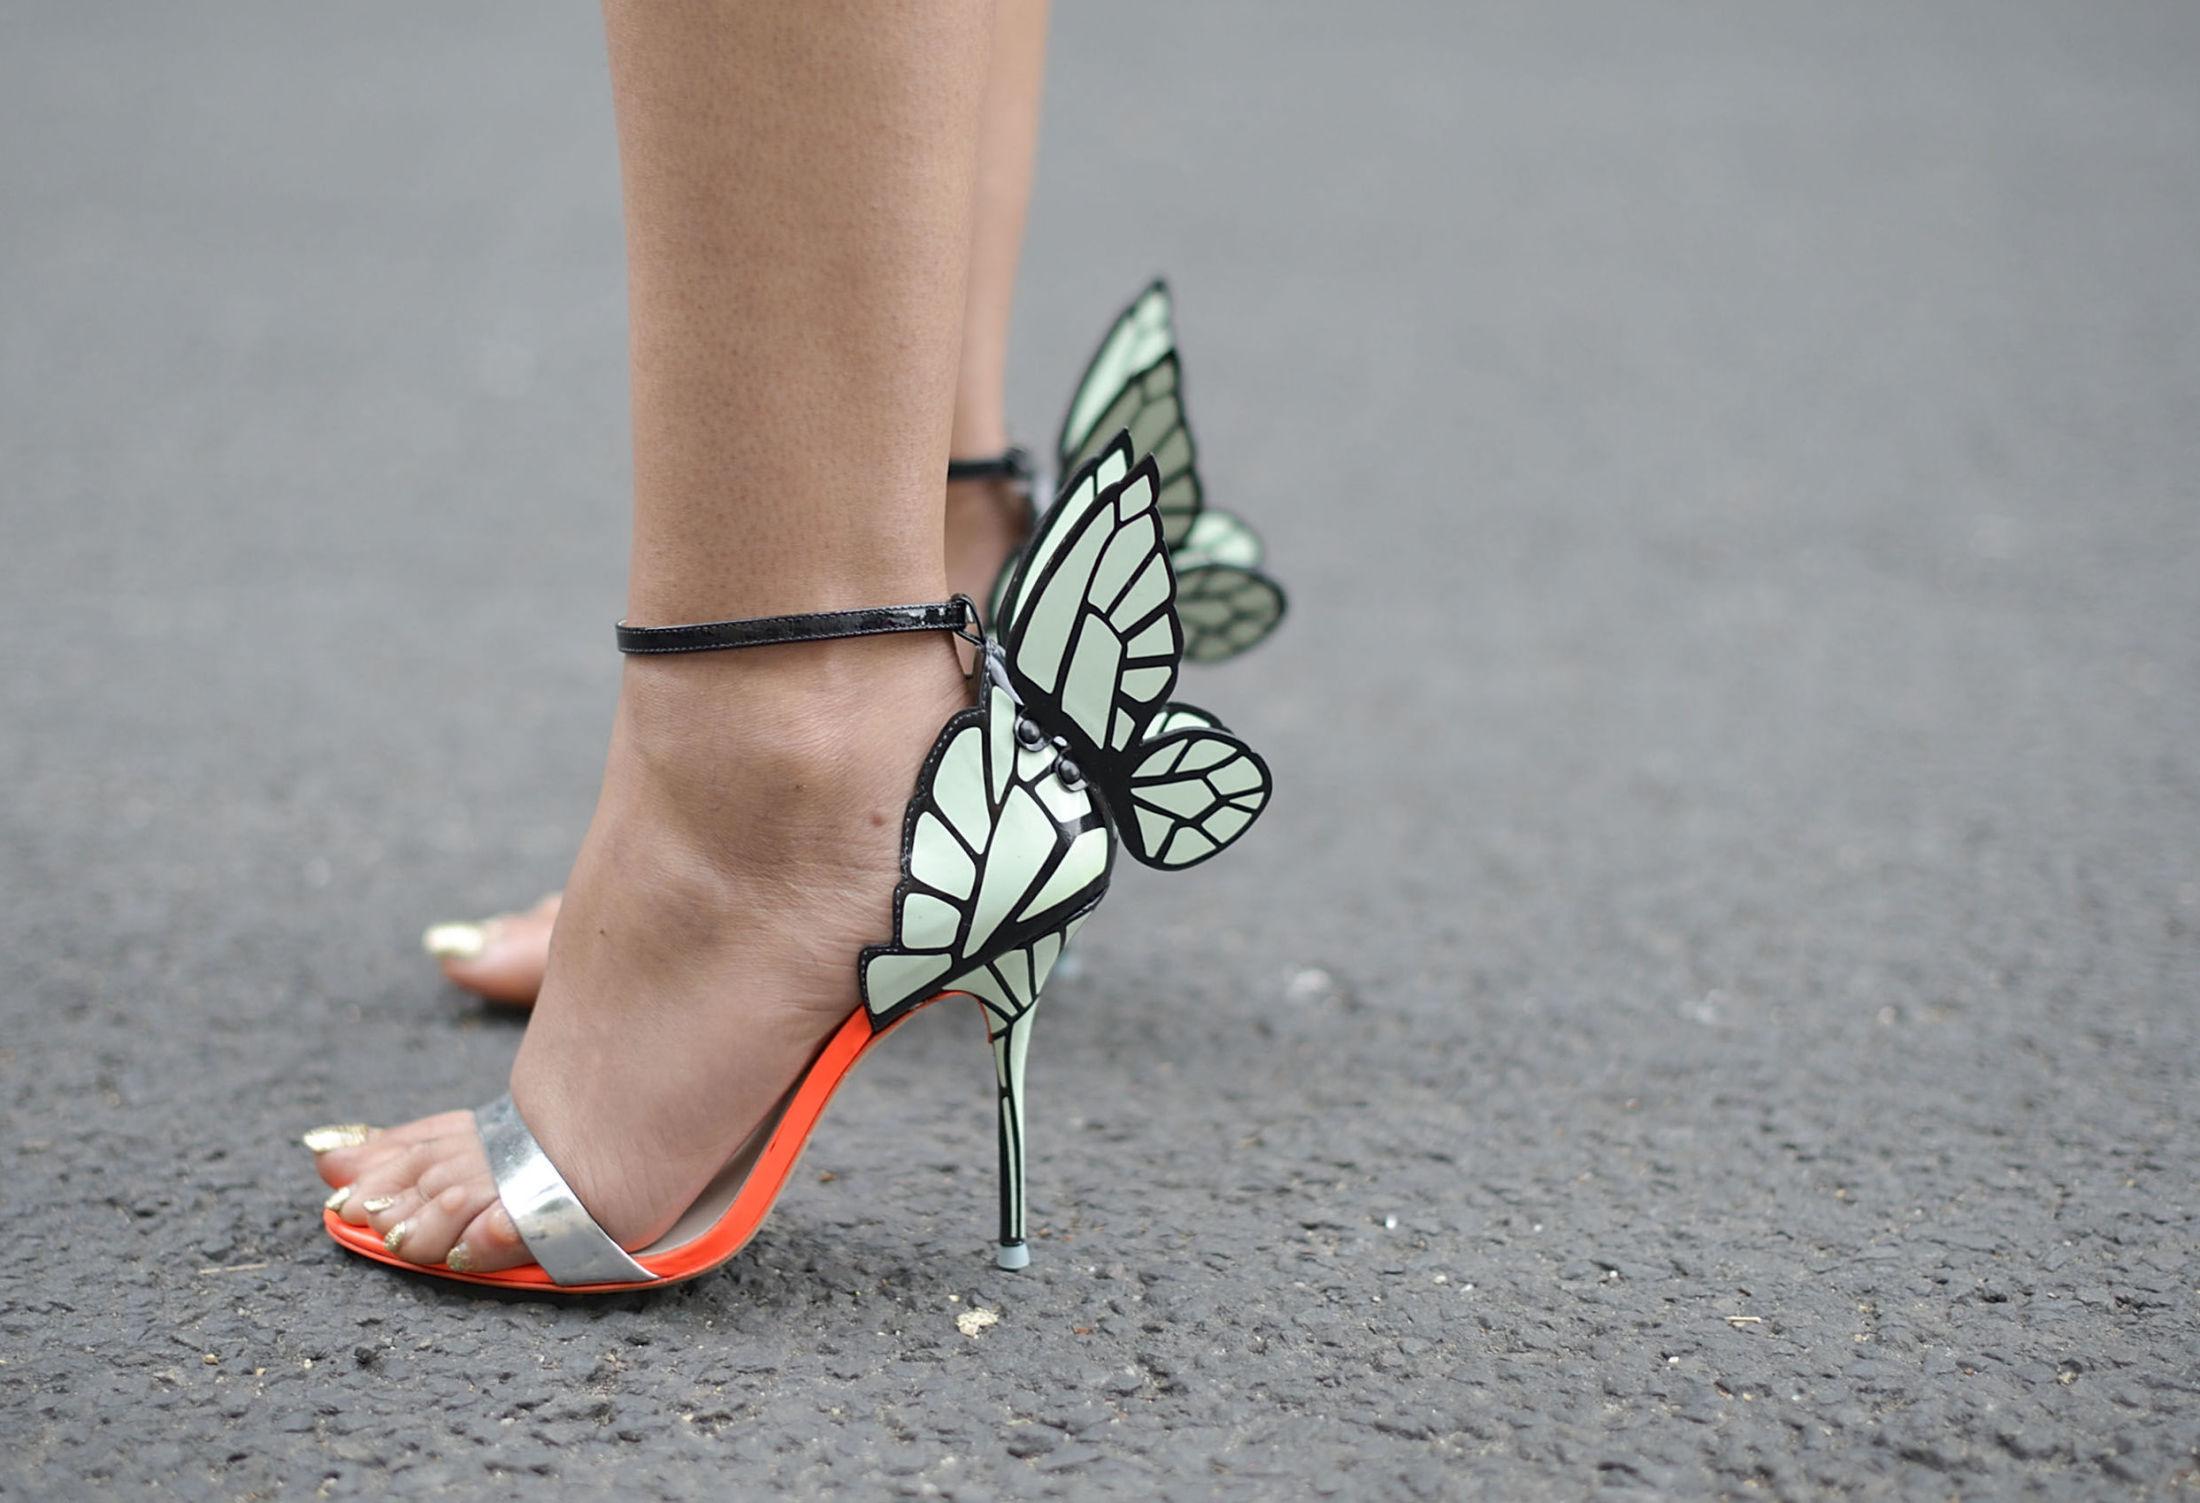 SOMMERFUGL: Skoen fra Sophia Webster ble her fotografert under moteuken i Paris juni 2015. Foto: Getty Images